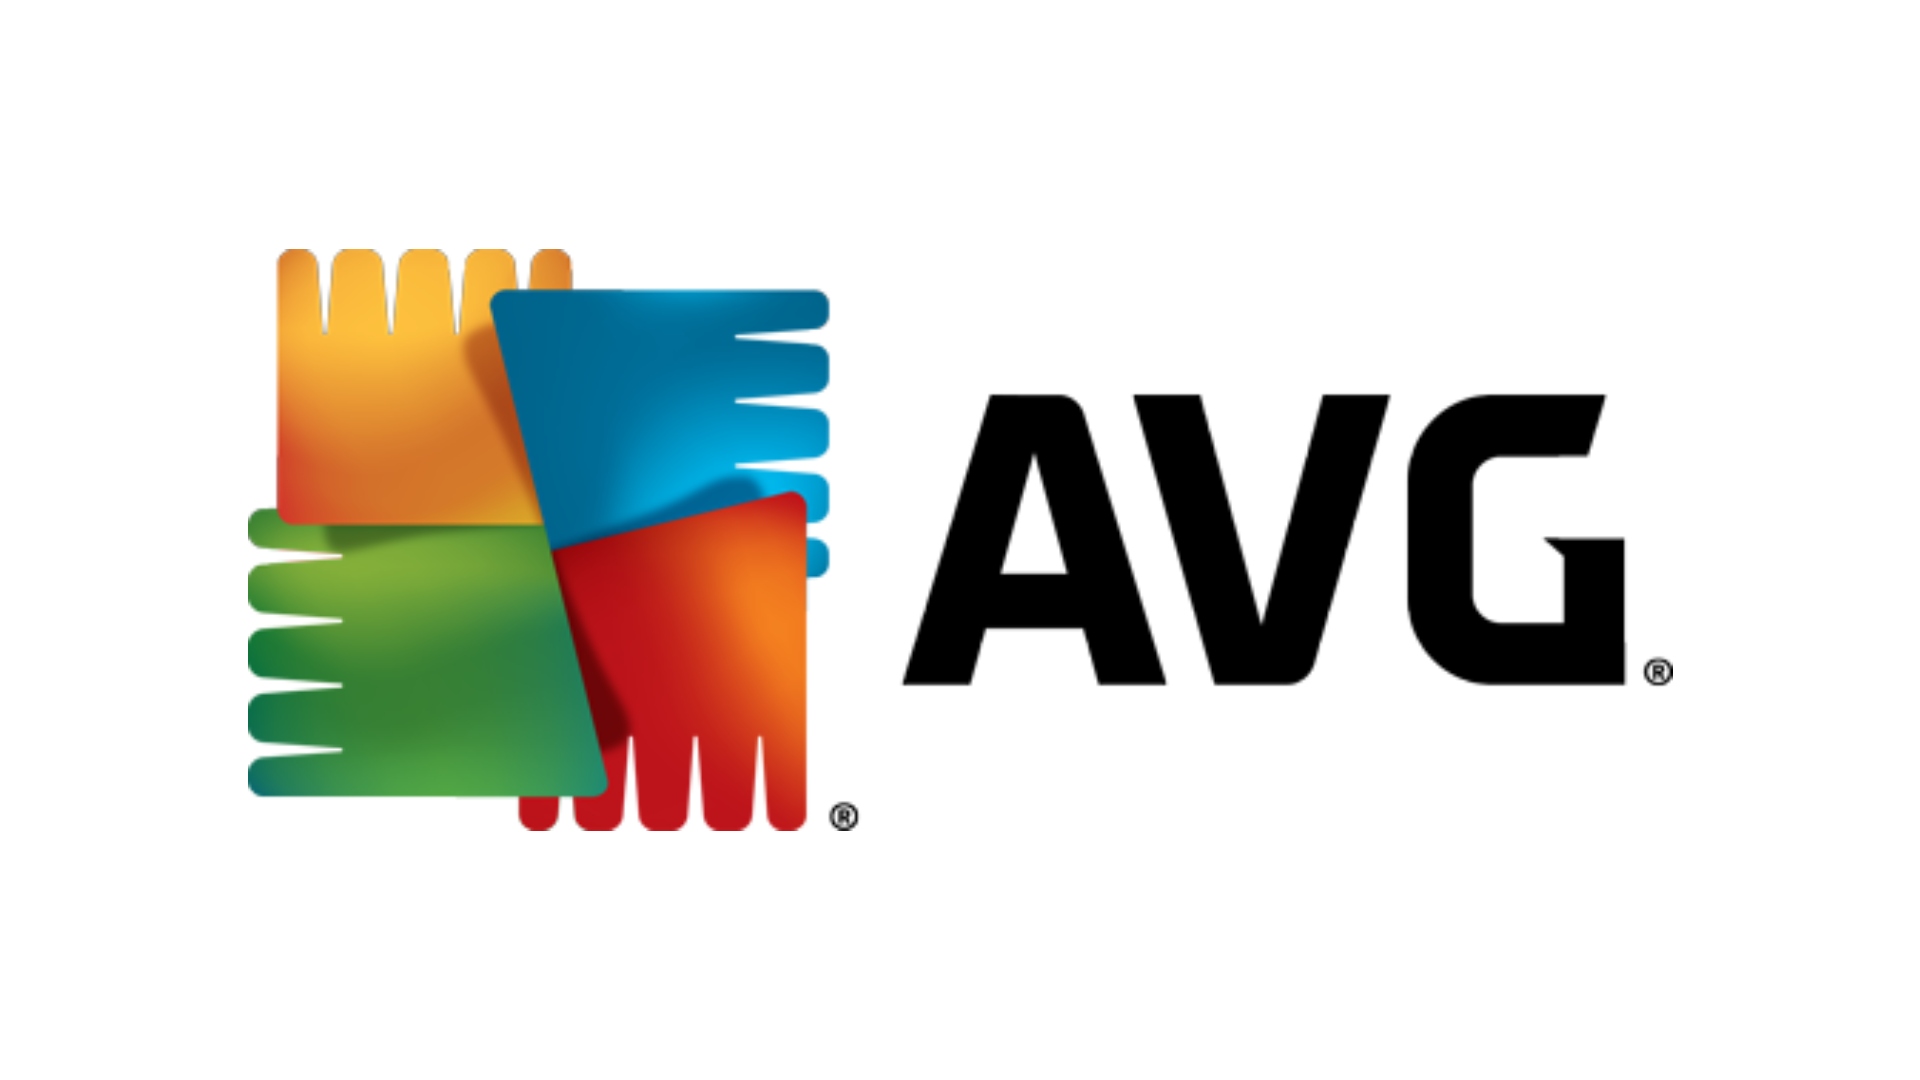 Best antivirus: The AVG logo on a white background.